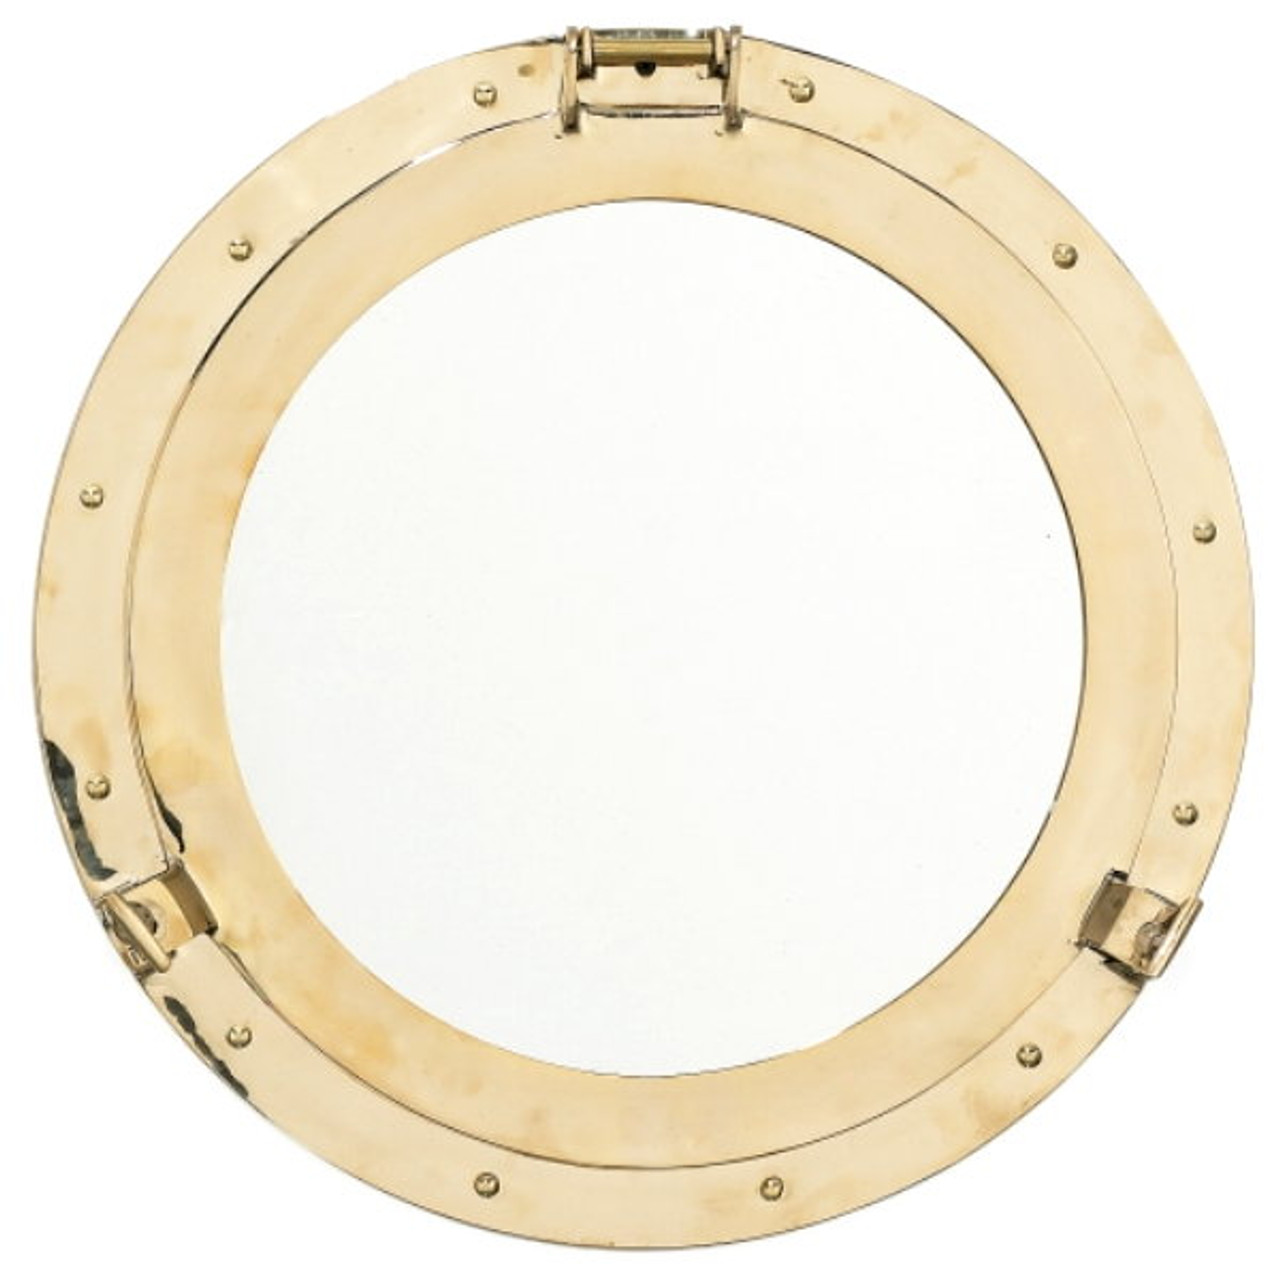 Authentic Nautical Portholes & Porthole Mirrors for Sale